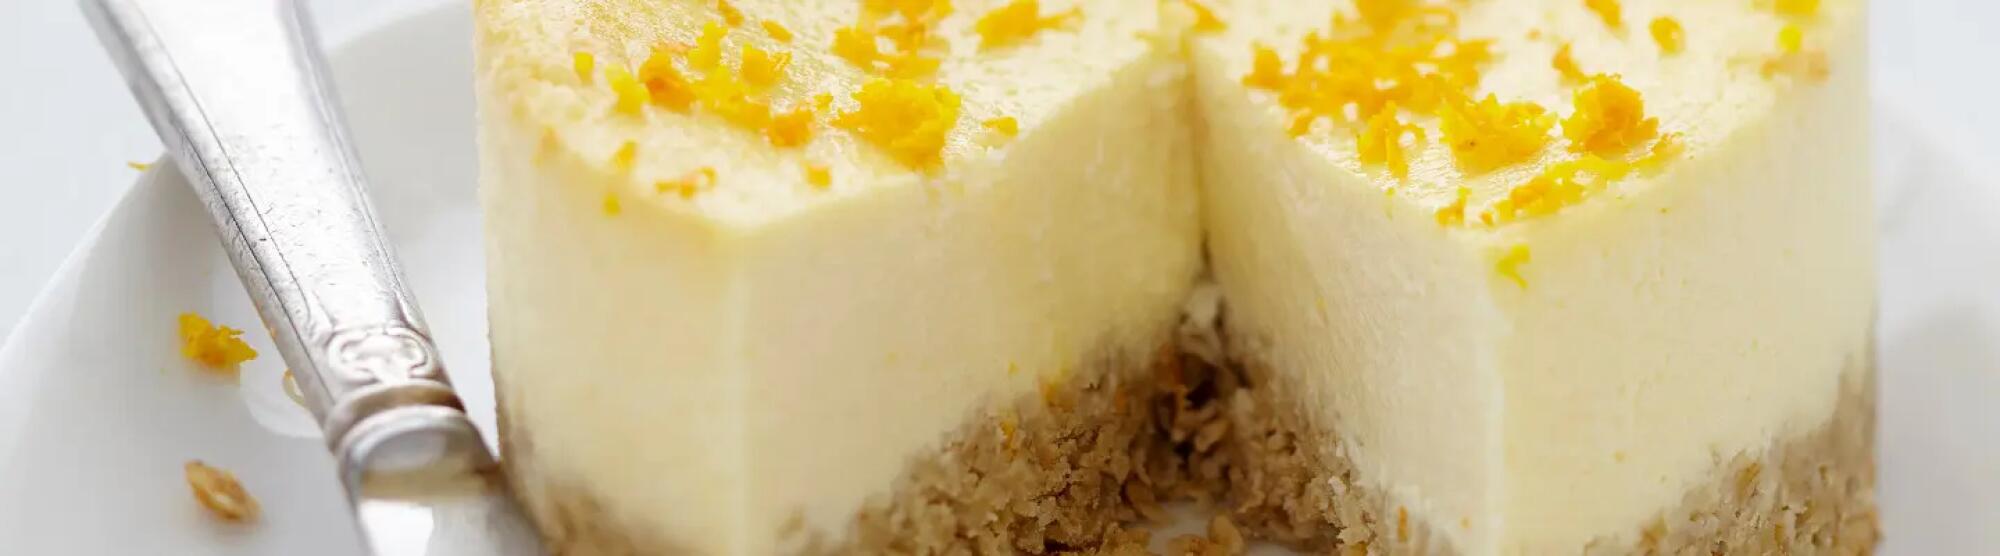 LA02_cheesecake-fromage-frais-carre-frais-orange